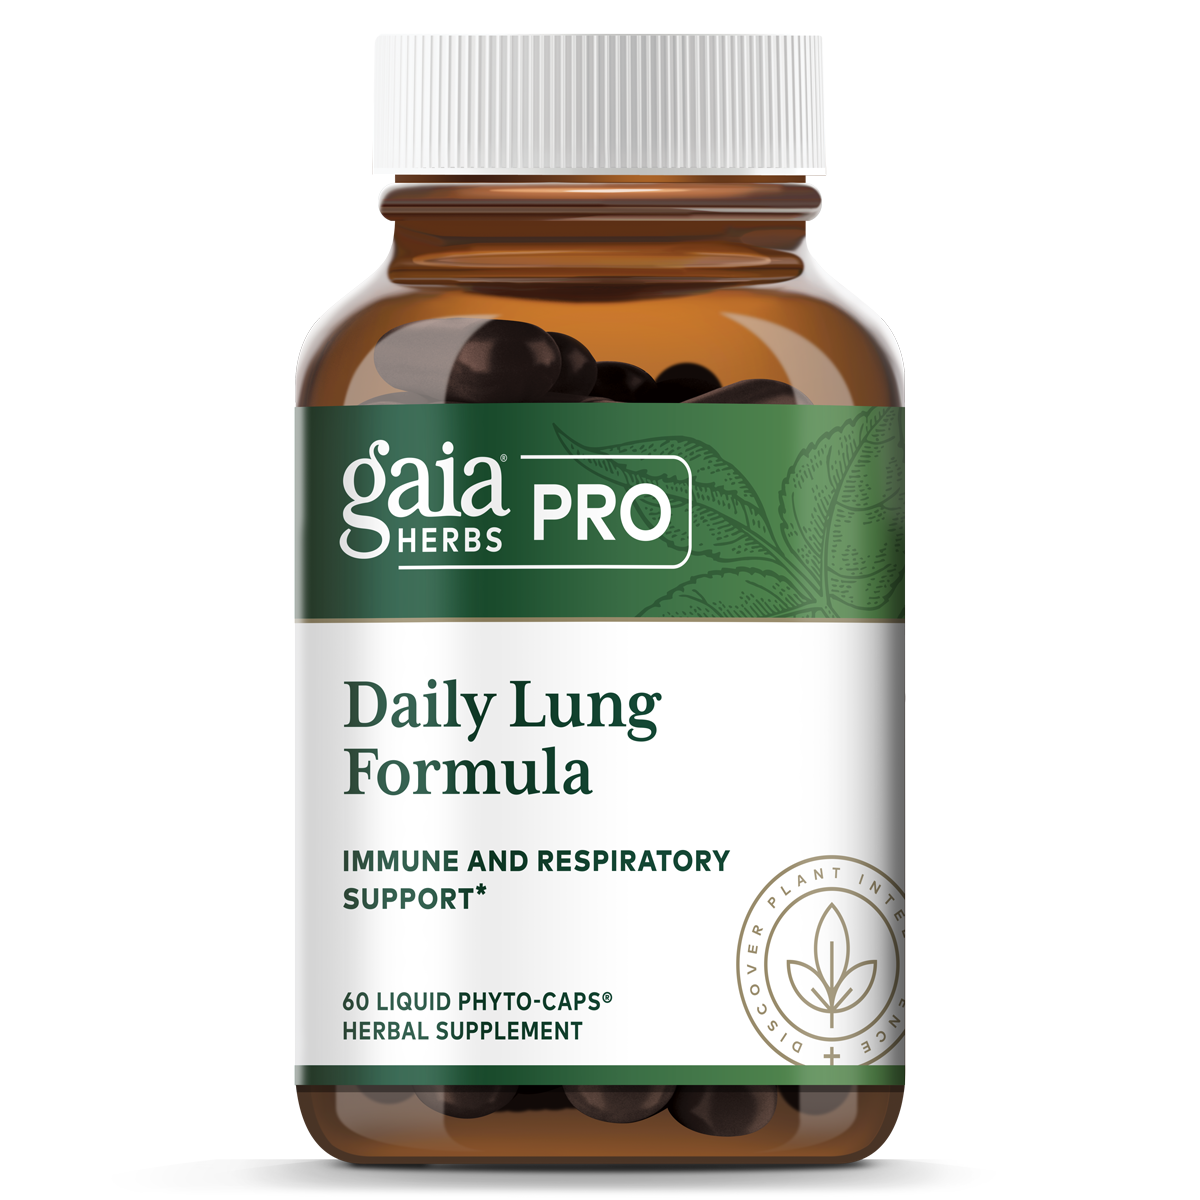 Daily Lung Formula - 60 Liquid Phyto-Caps | Gaia Herbs